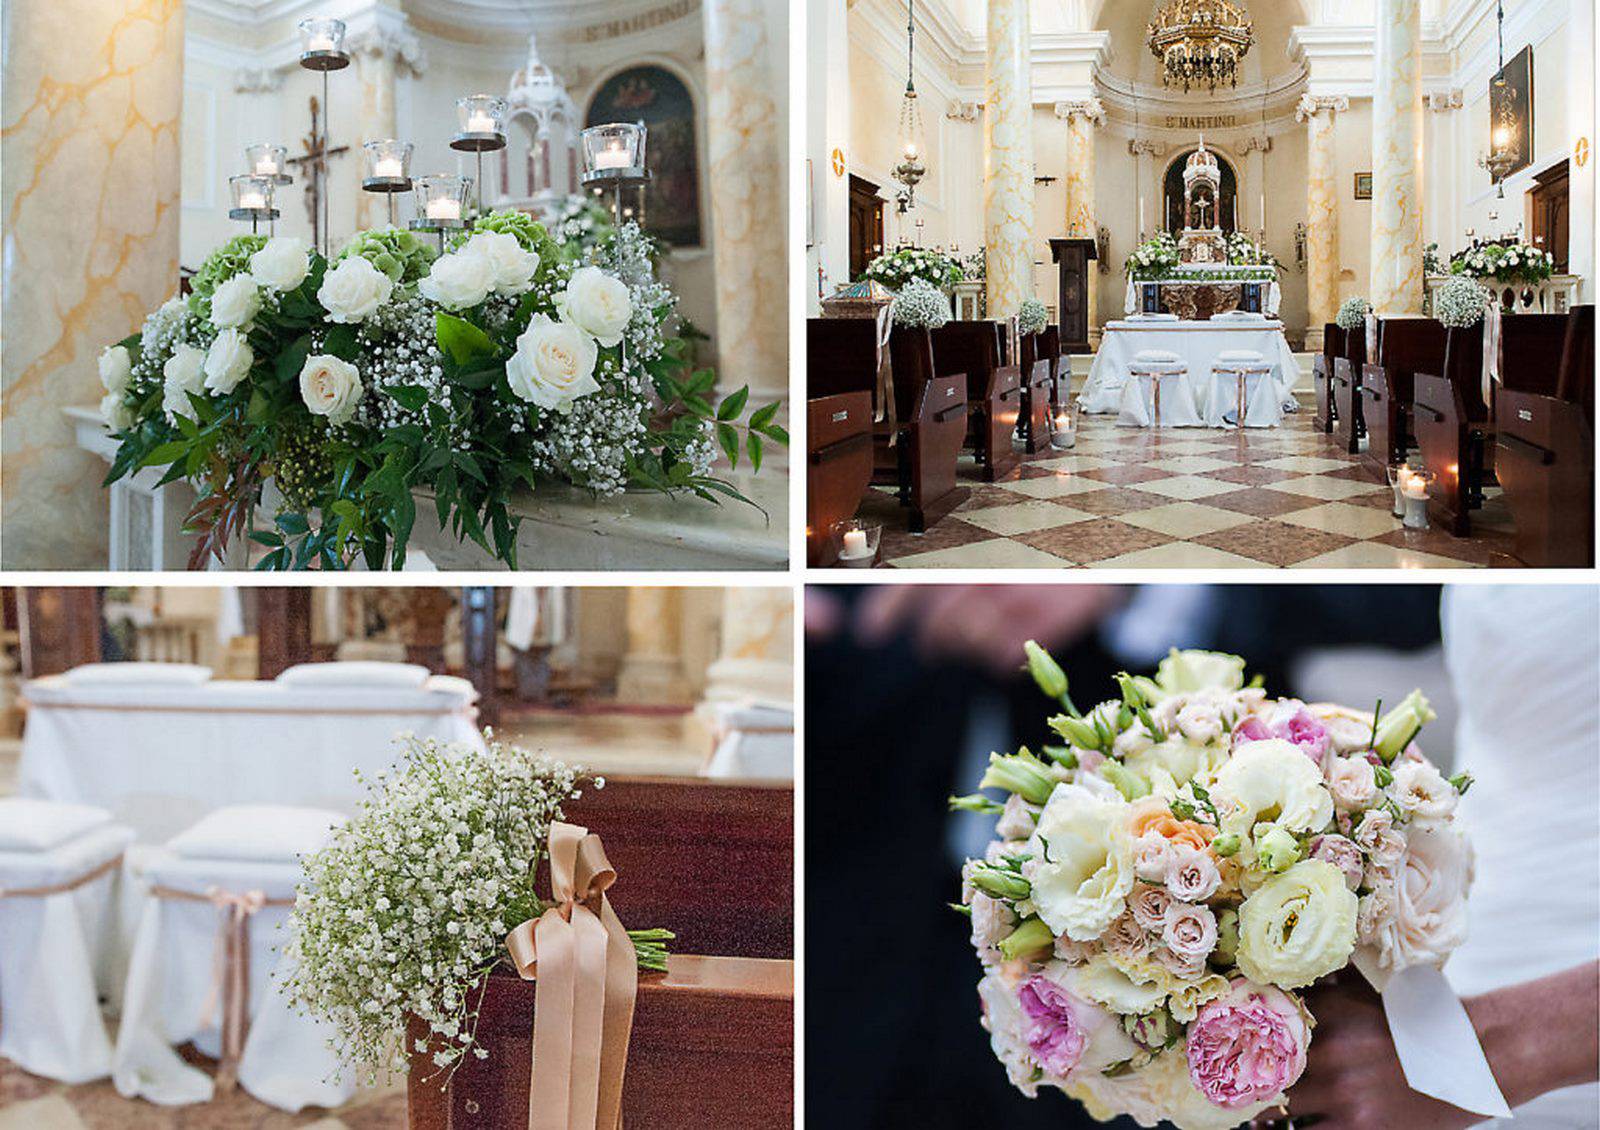 Il significato dei fiori nella chiesa per il matrimonio: un tocco di bellezza e simbolismo